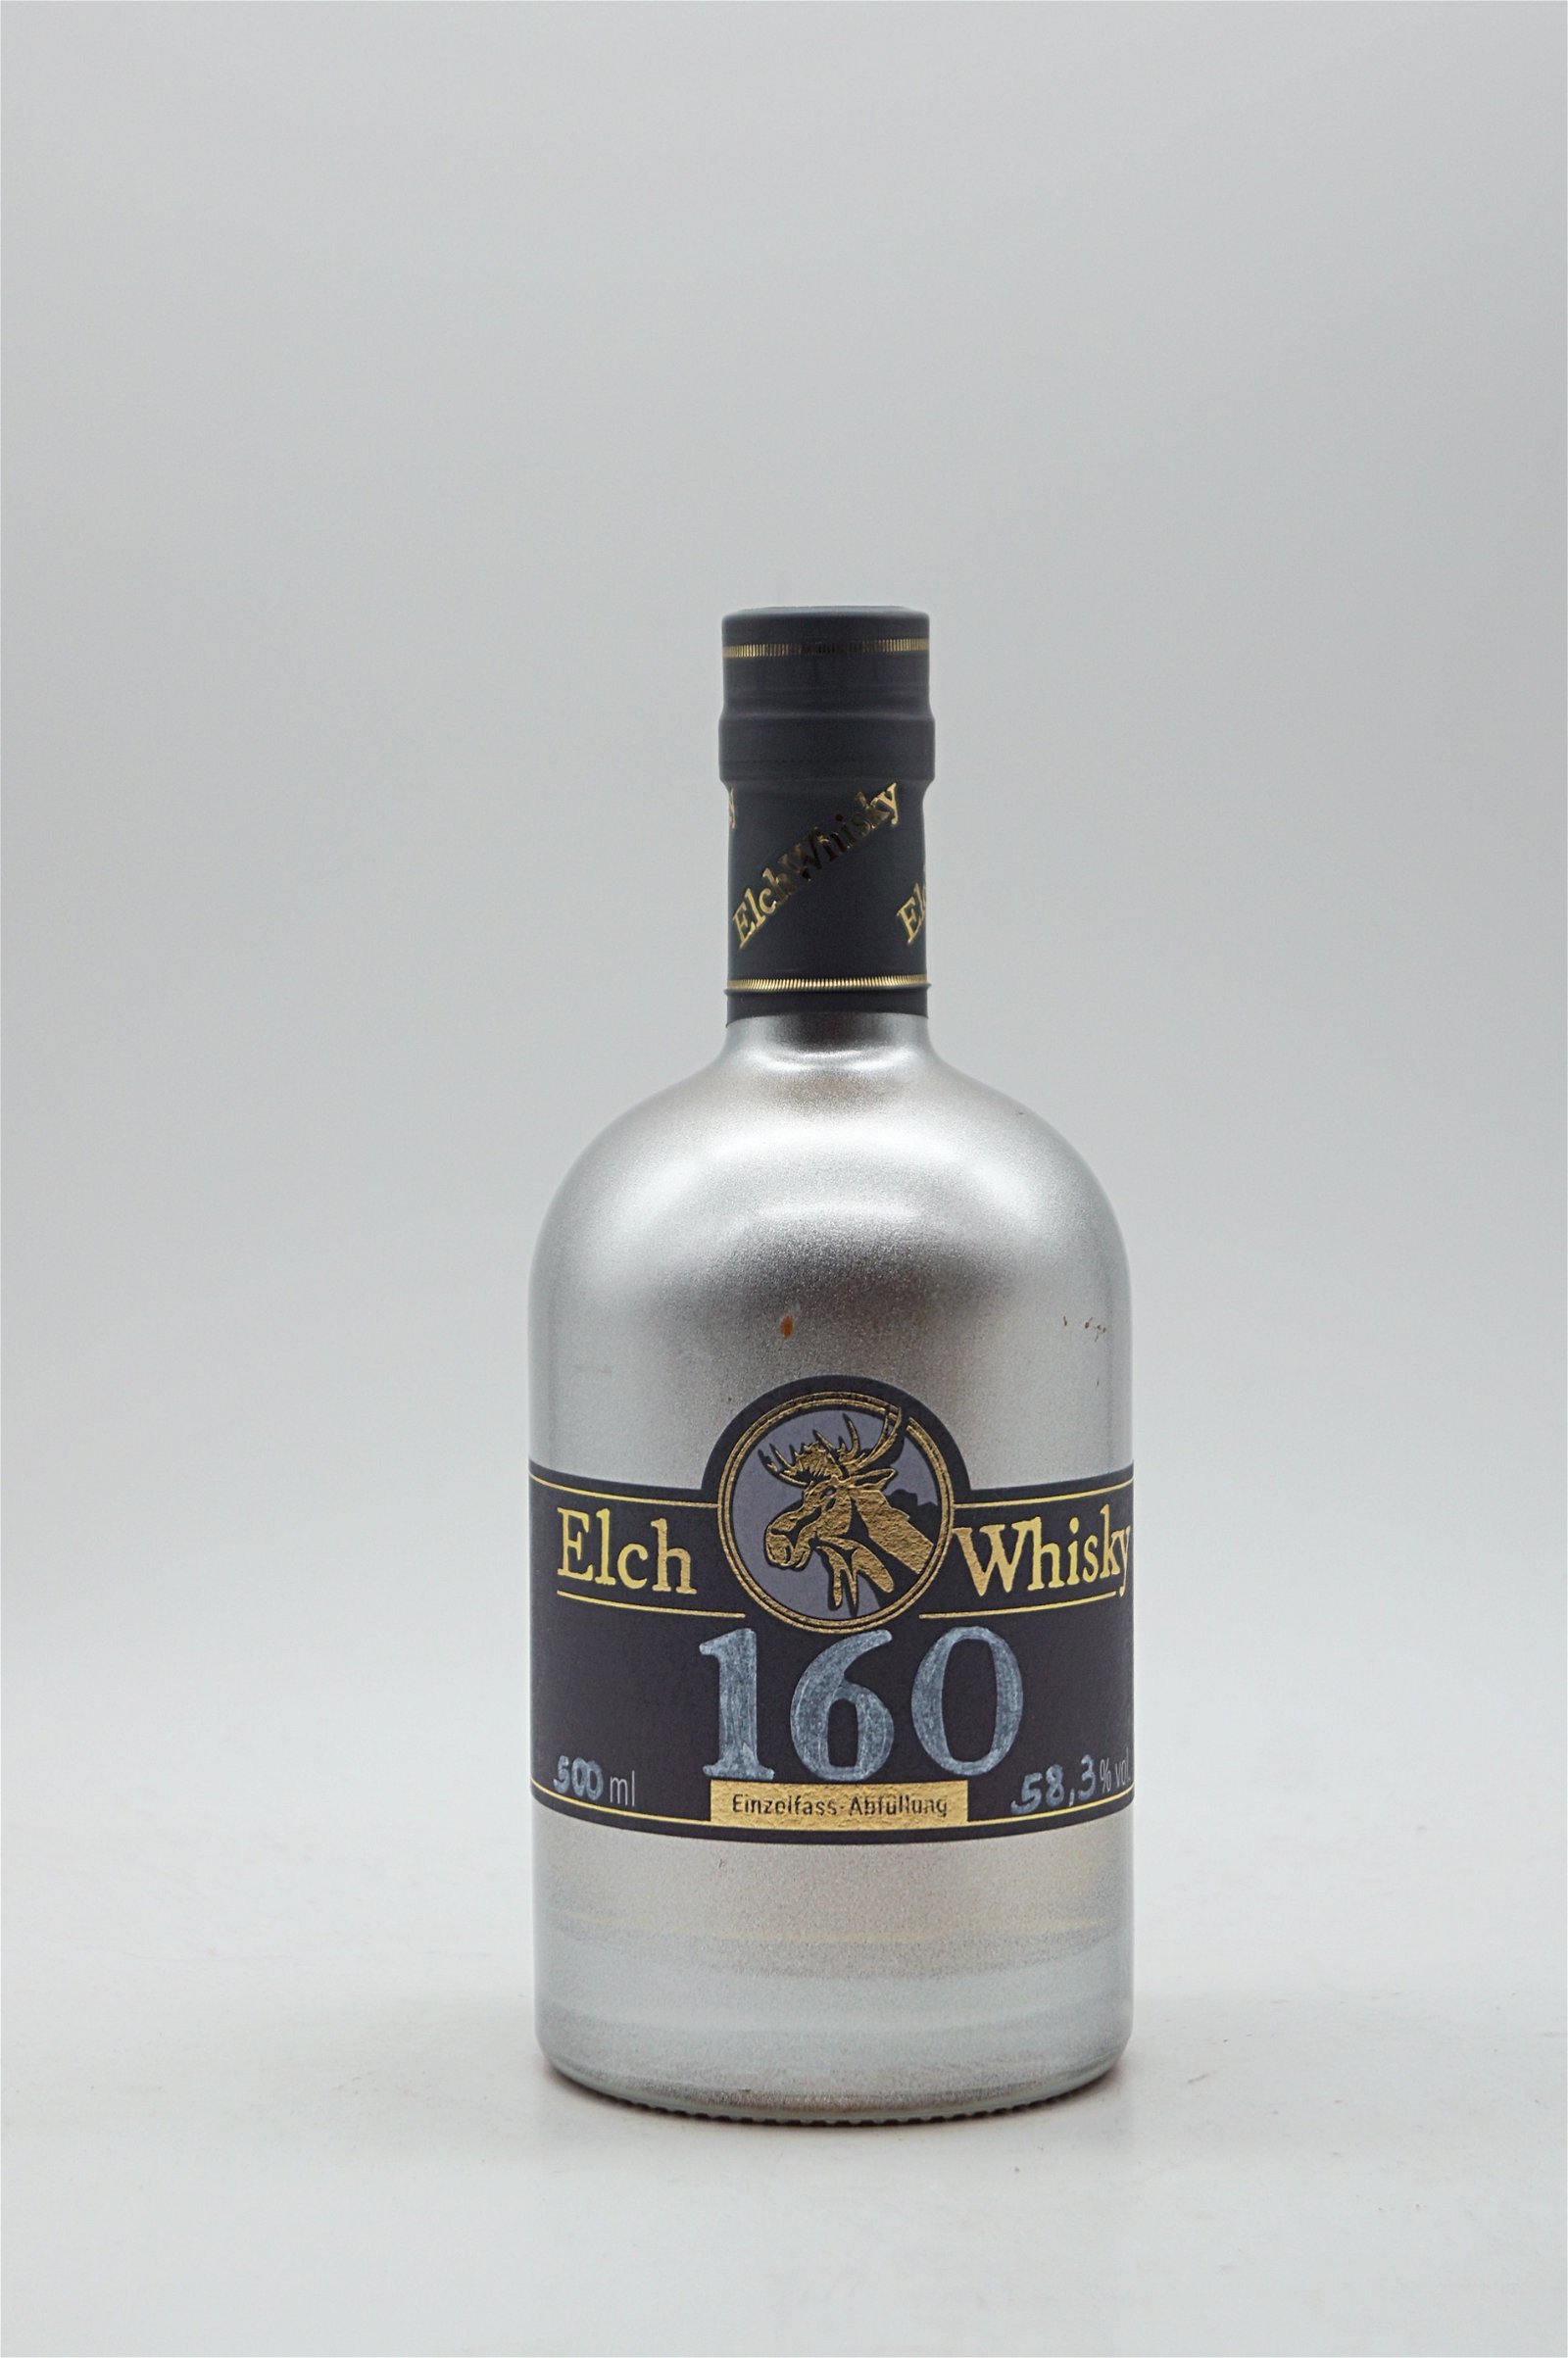 Elch Whisky Einzelfassabfüllung Fass-Nr. 160